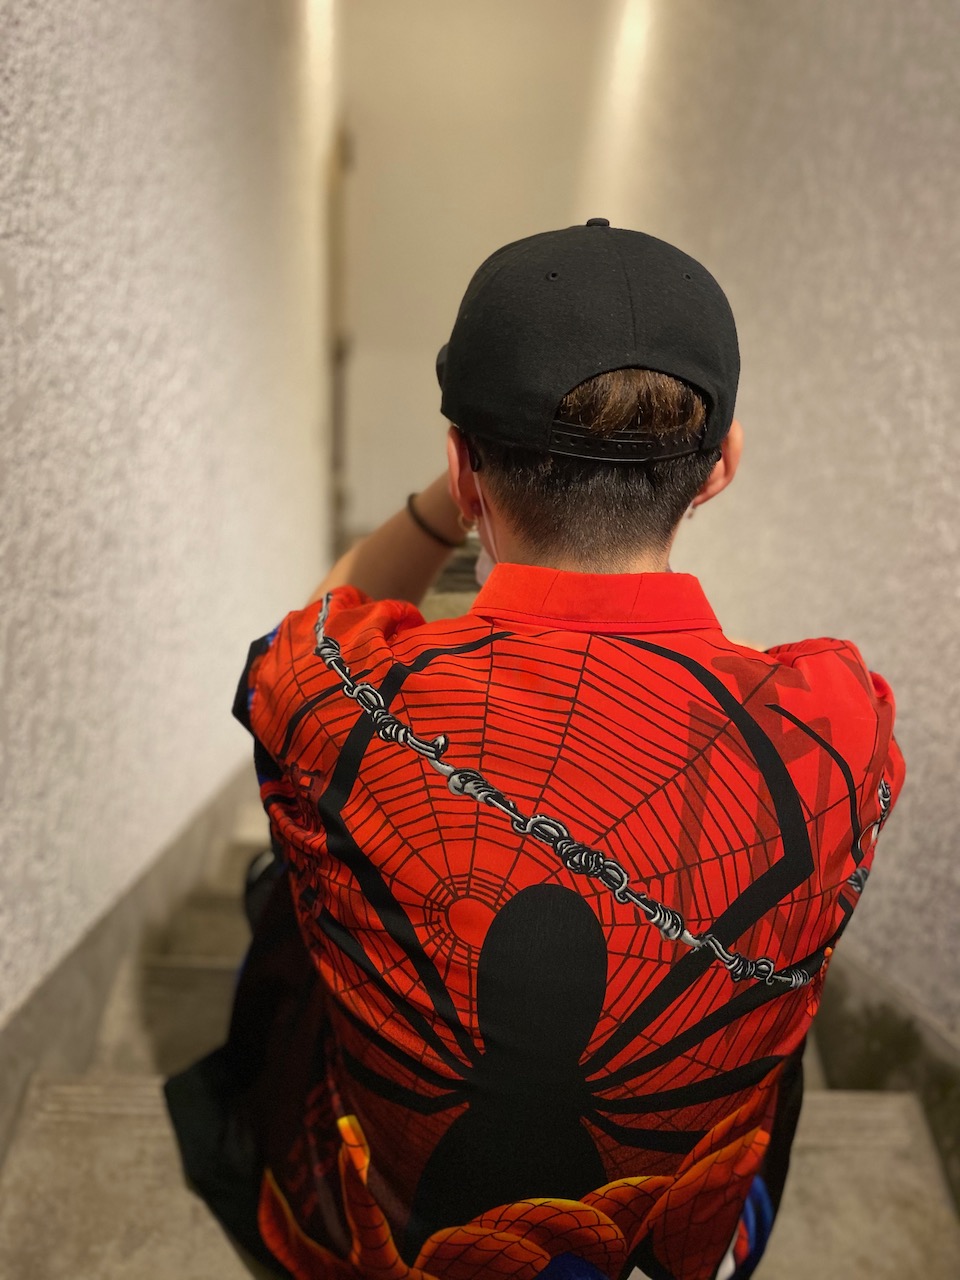 Spider-Man style